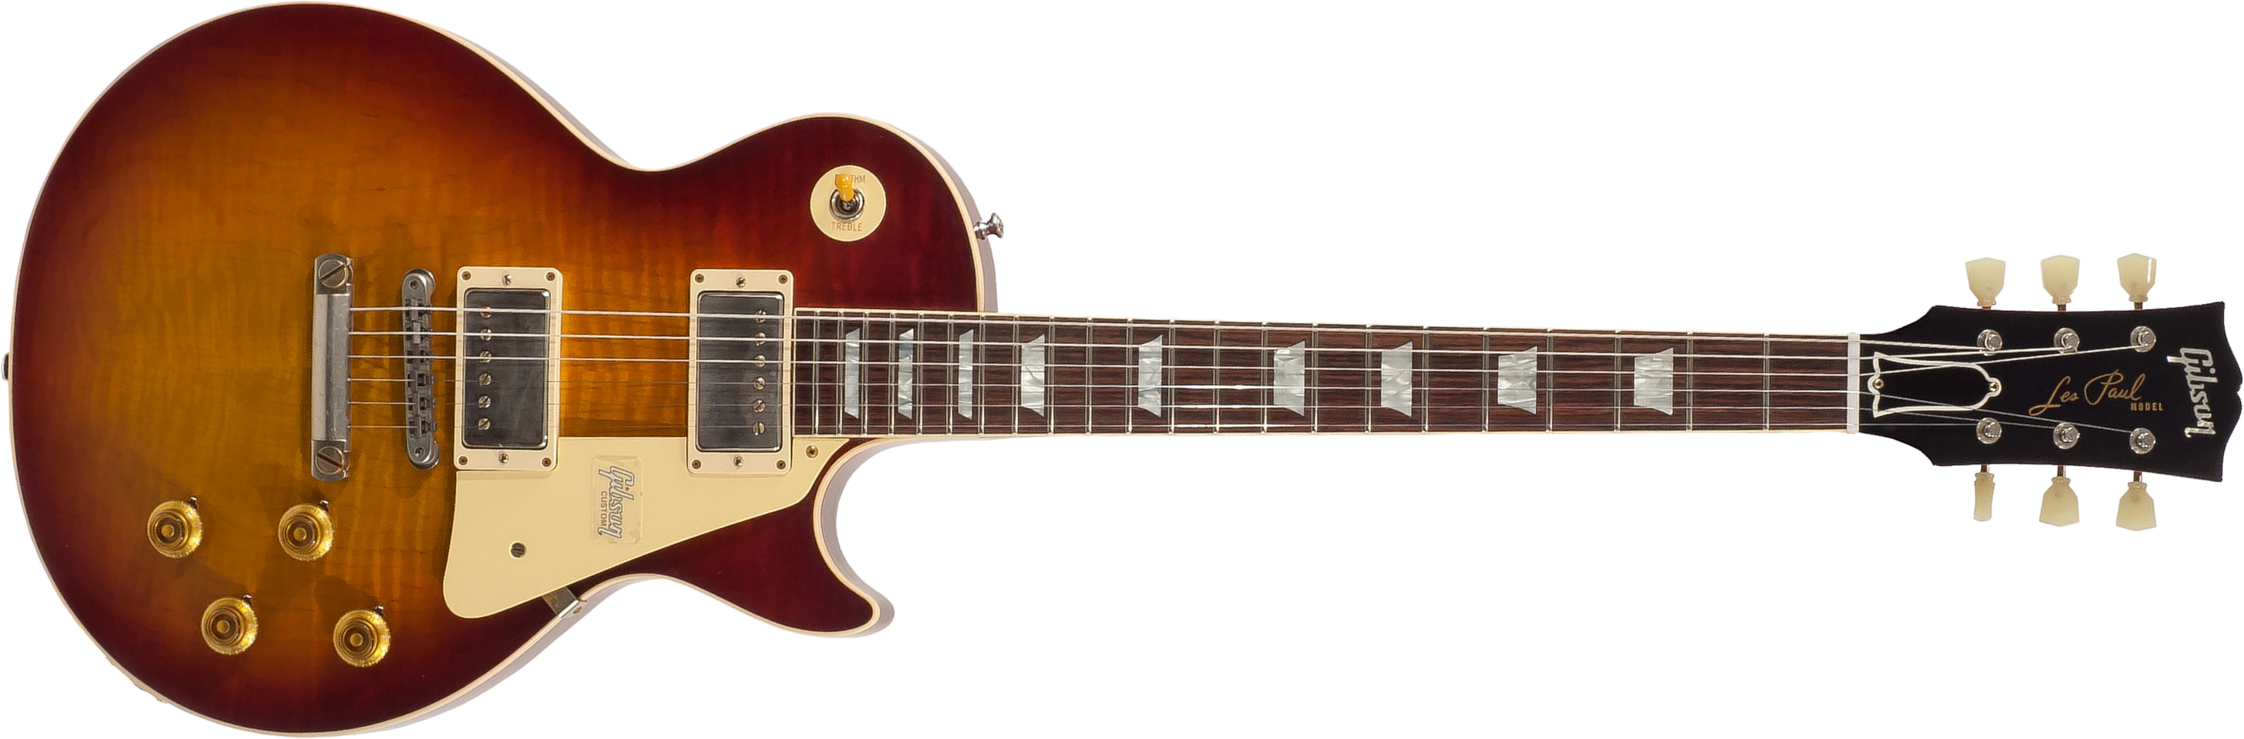 Gibson Custom Shop Les Paul Standard 1959 2h Ht Rw - Vos Vintage Cherry Sunburst - Single cut electric guitar - Main picture